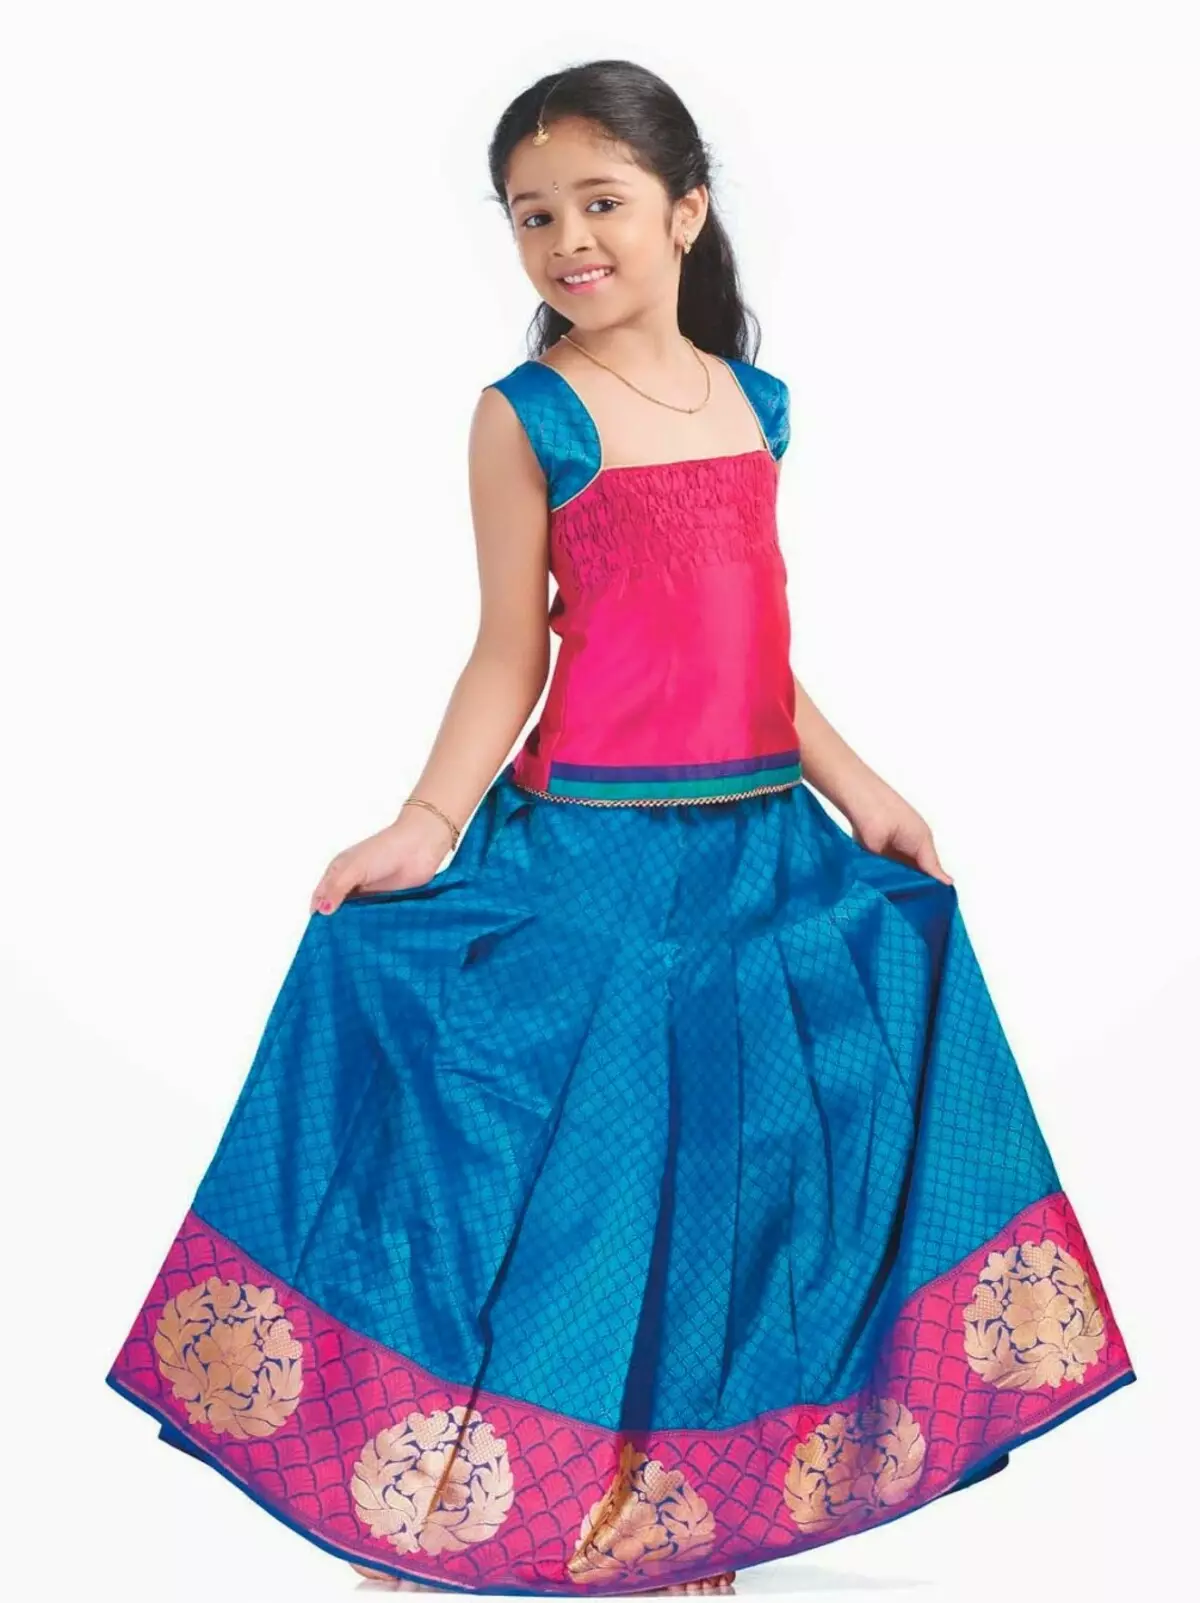 Costume Indian (86 Hoto): Hoto na ƙasa don yarinyar, Yara kayayyaki don rawar Indiya, kayan gargajiya ga yara 1368_49